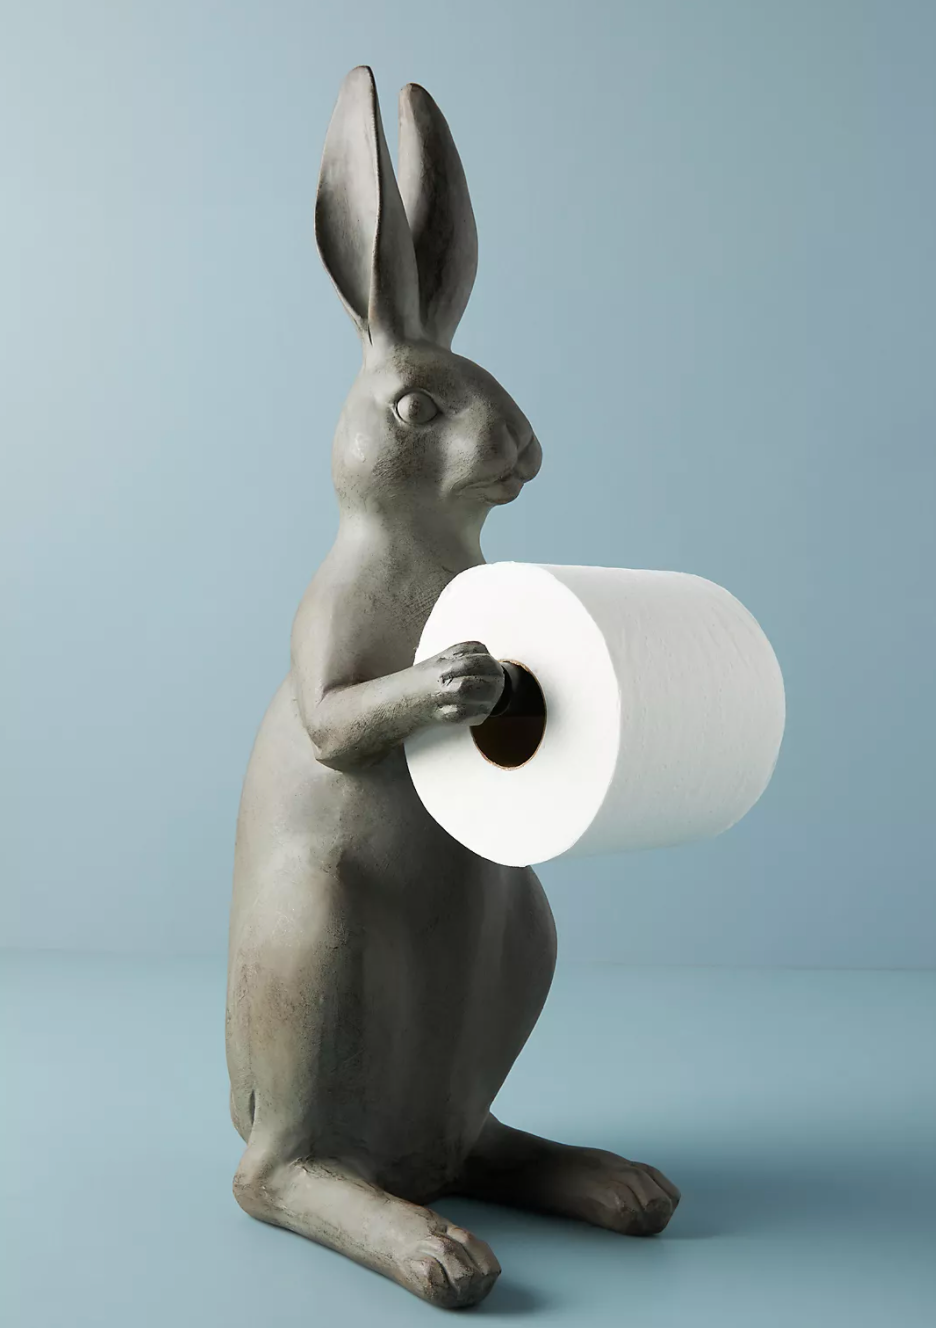 Rabbit toilet paper holder